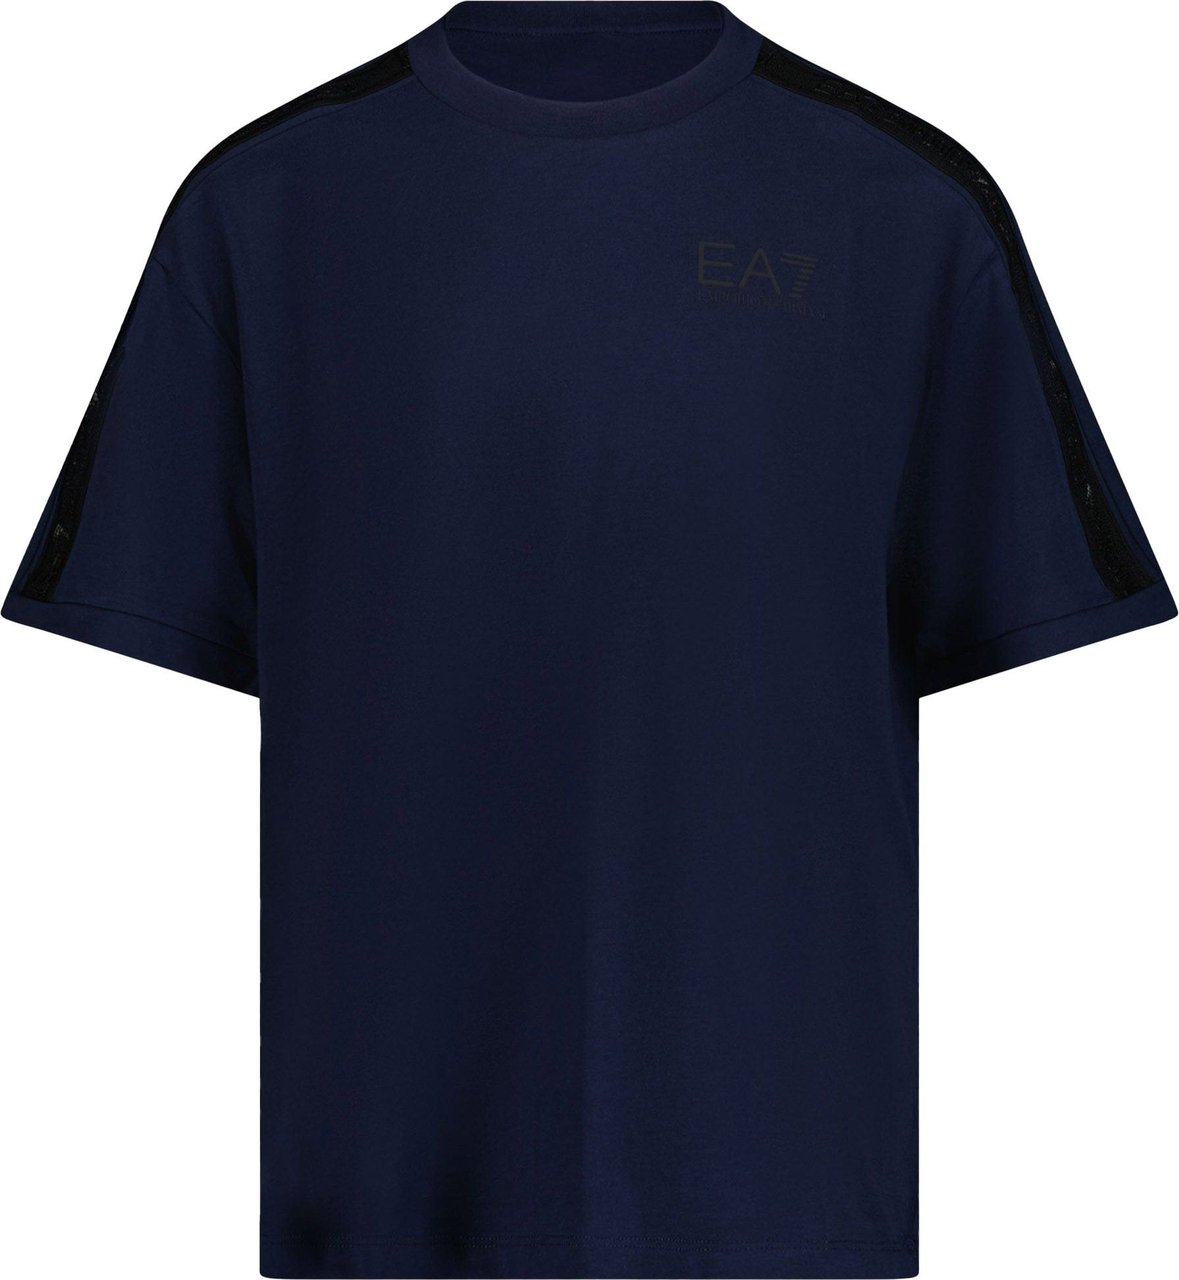 EA7 EA7 Kinder Jongens T-shirt Navy Blauw